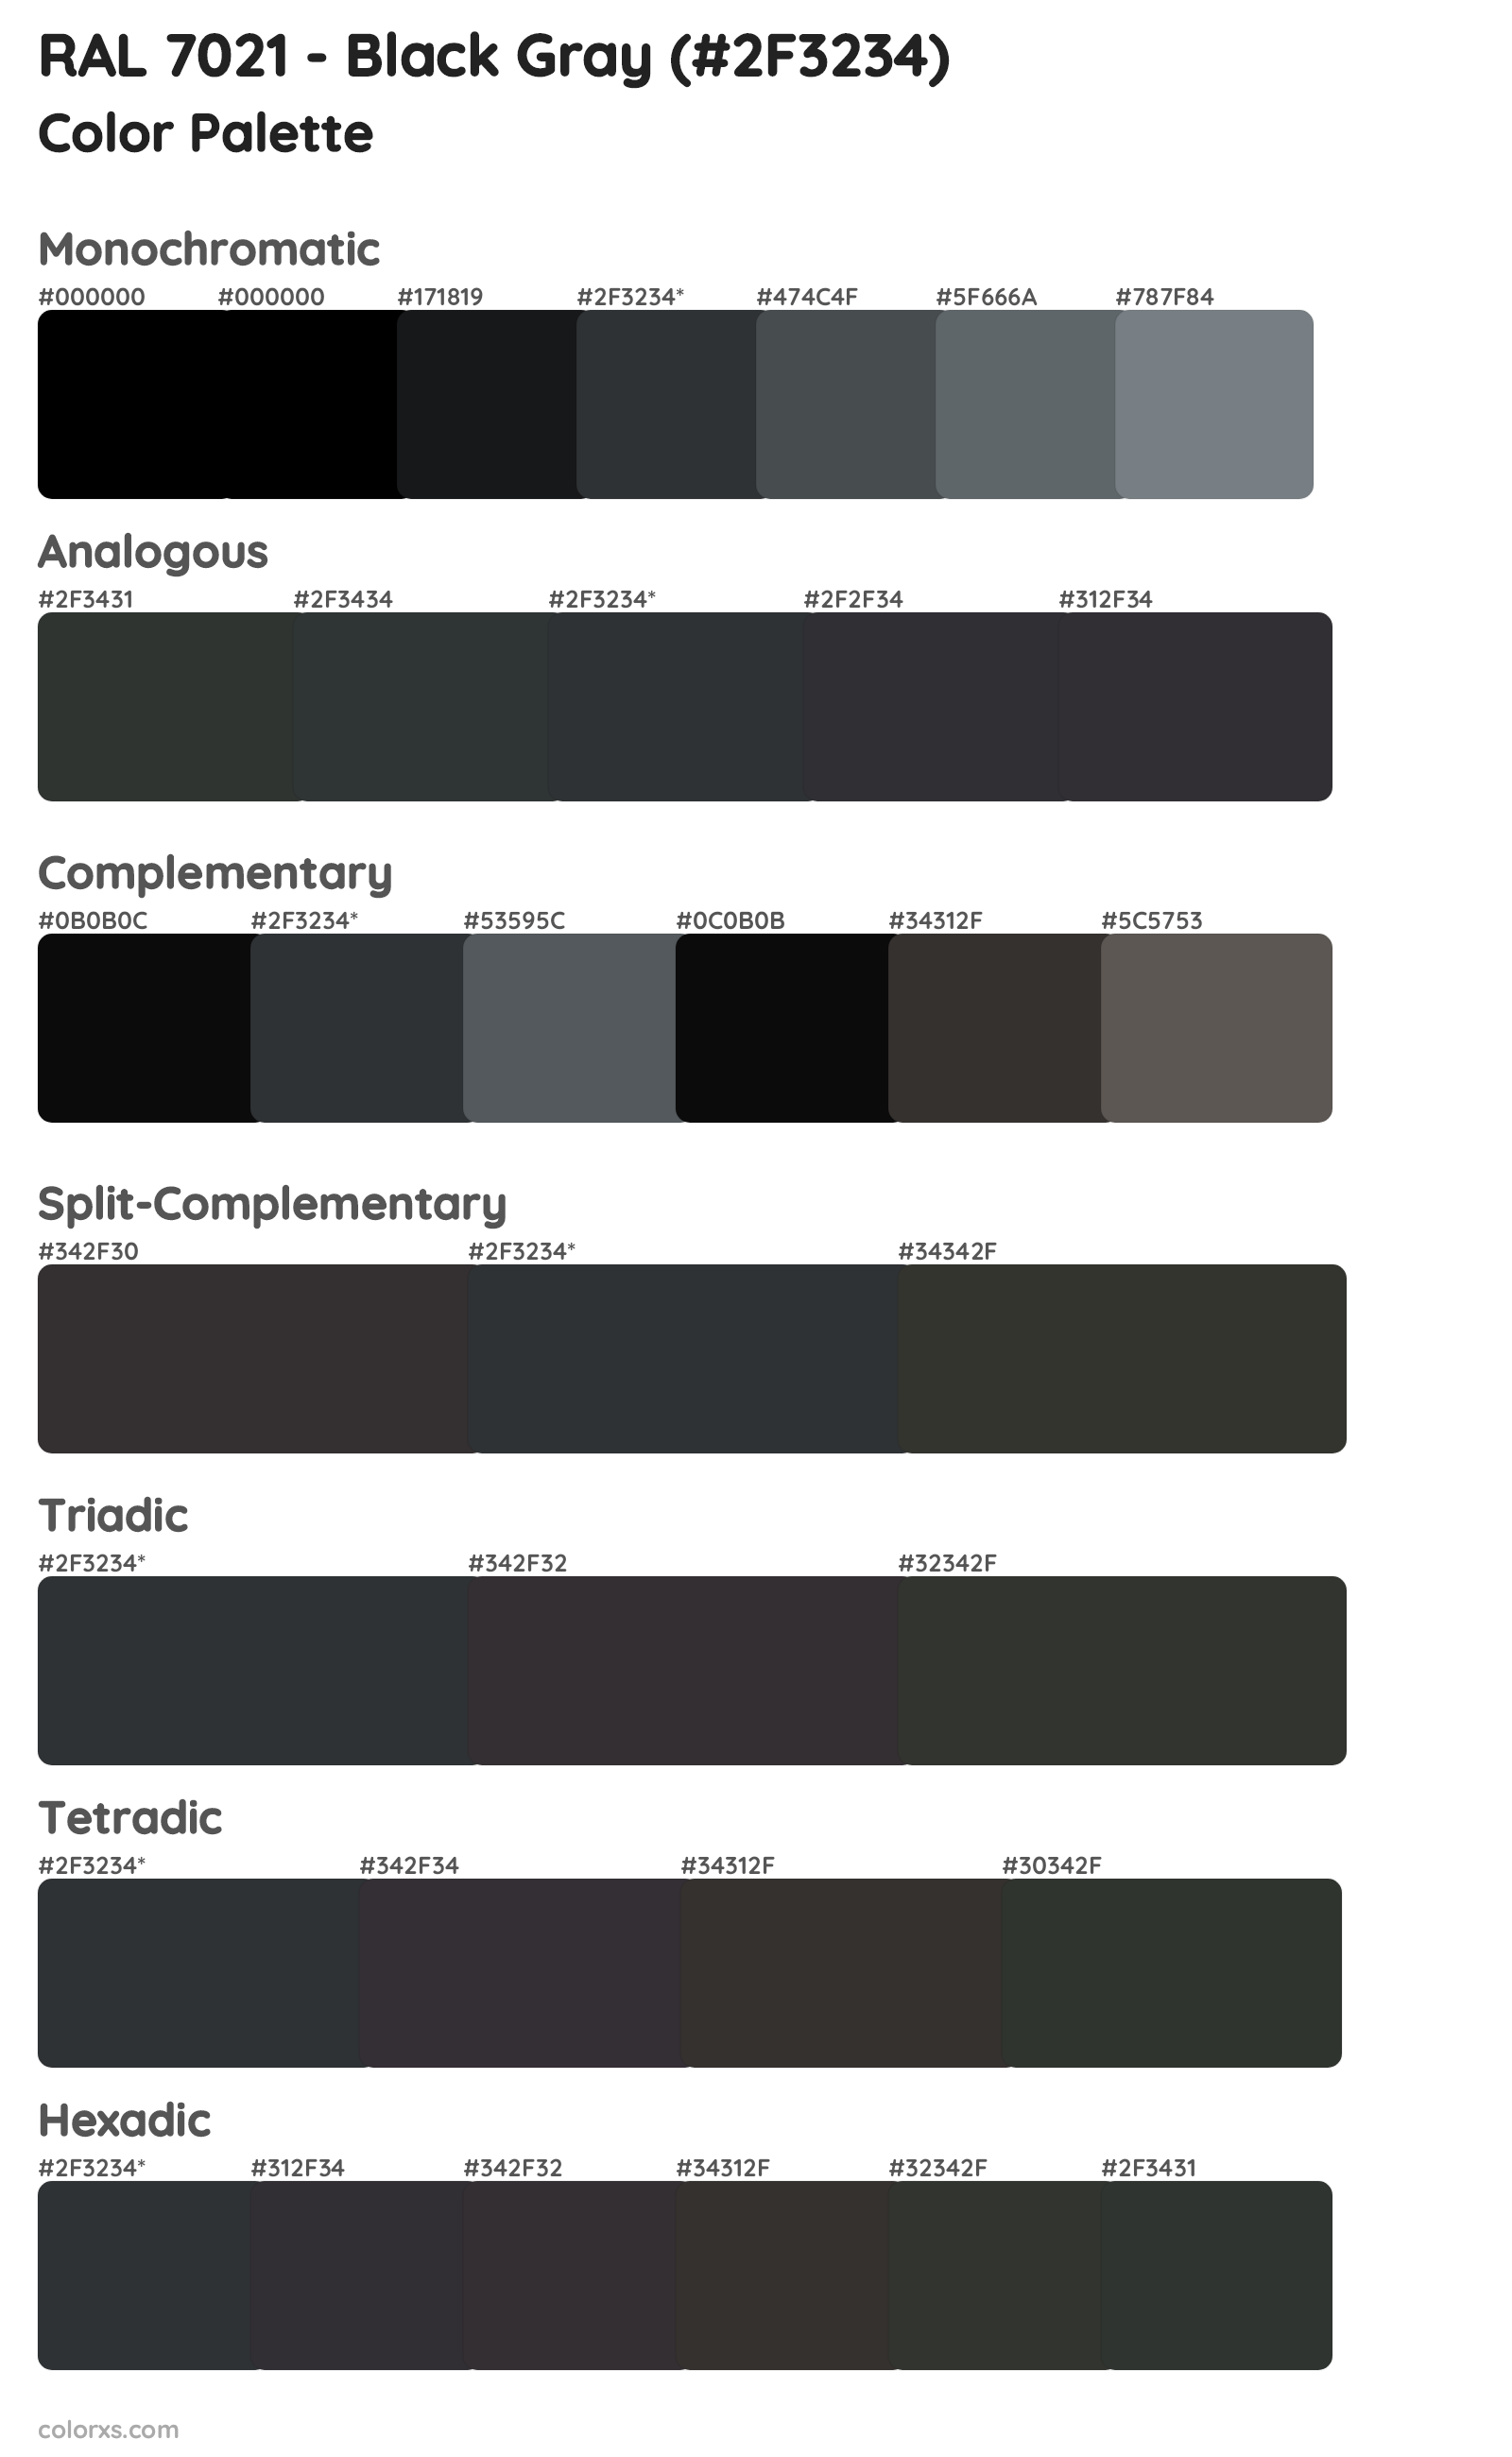 RAL 7021 - Black Gray Color Scheme Palettes